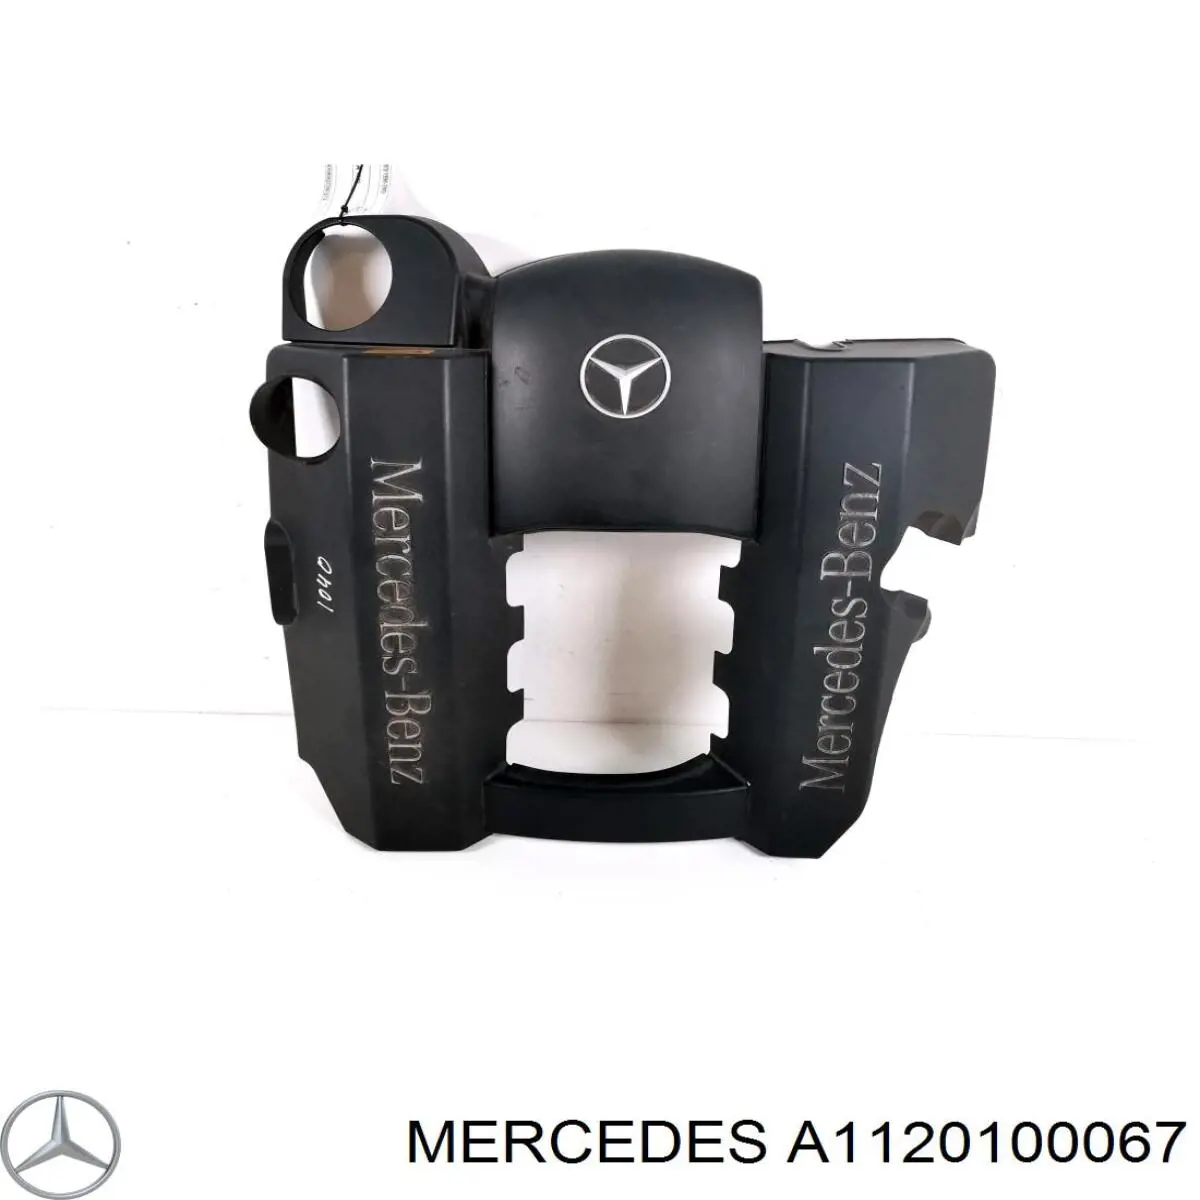 A1120100067 Mercedes tampa de motor decorativa